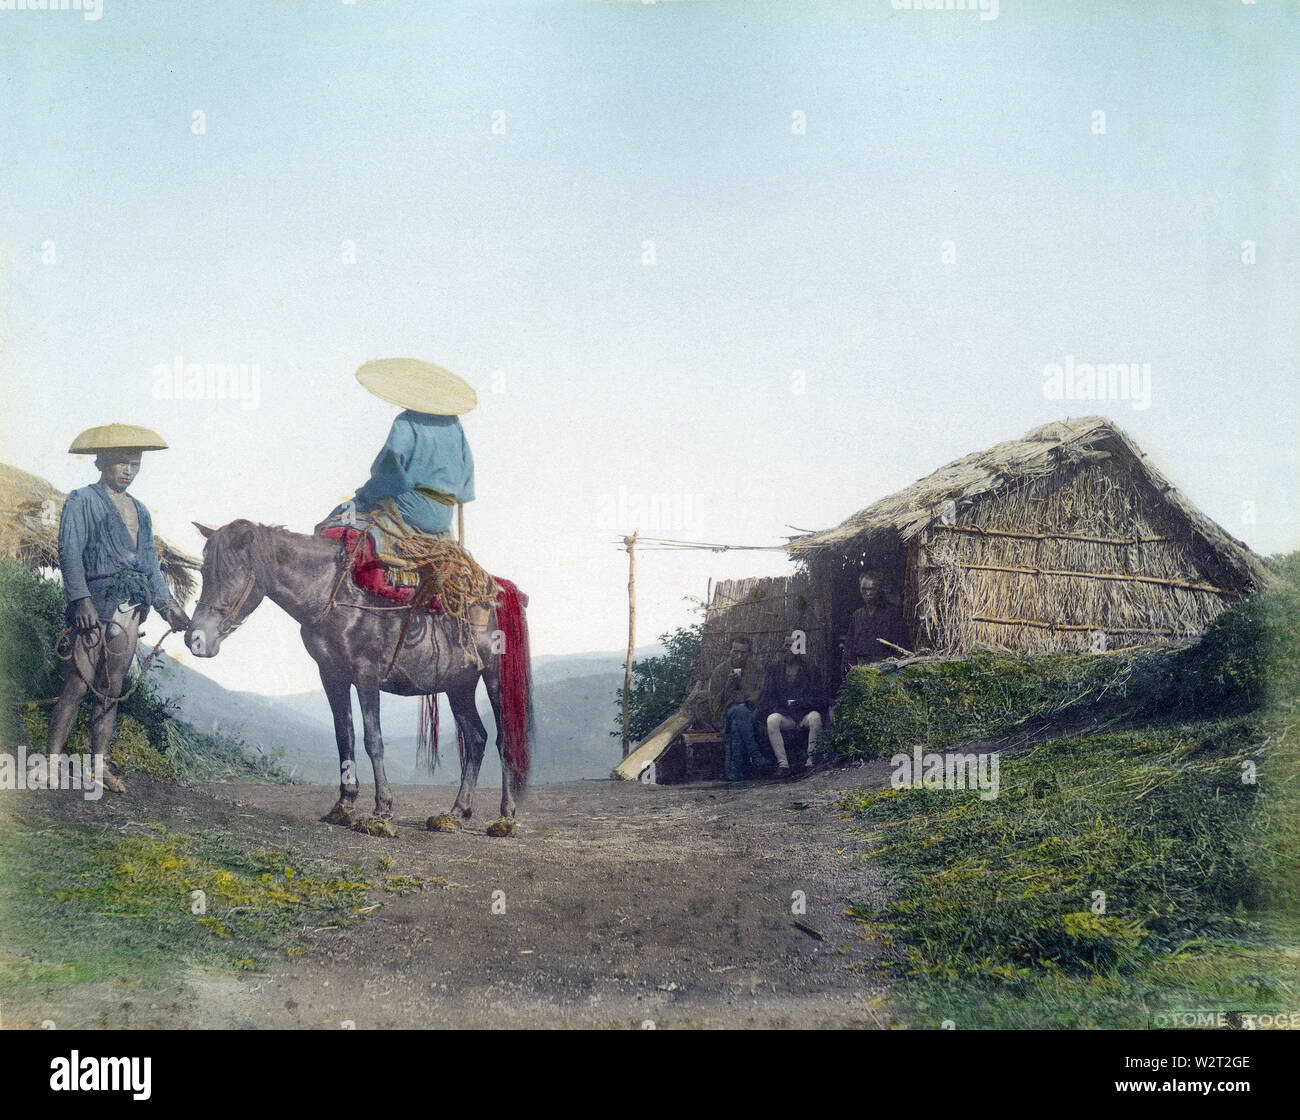 [1880s Japan - Japanische Reisende mit einem Pferd] - ein Mago (馬子, Pferde, Treiber) trägt ein sugegasa konische Hut steht vor dem teehaus an Otometoge Pass (乙女峠). Der Pass war an der Grenze von Gotemba in der Präfektur Shizuoka und Hakone in der Präfektur Kanagawa. In einer Höhe von 1005 Meter über dem Meeresspiegel und bietet einen majestätischen Blick auf den Berg Fuji. Während der Edo Periode (1604-1868) die Strecke war streng geregelt. Versuchsweise Adolfo Farsari zugeschrieben. 19 Vintage albumen Foto. Stockfoto